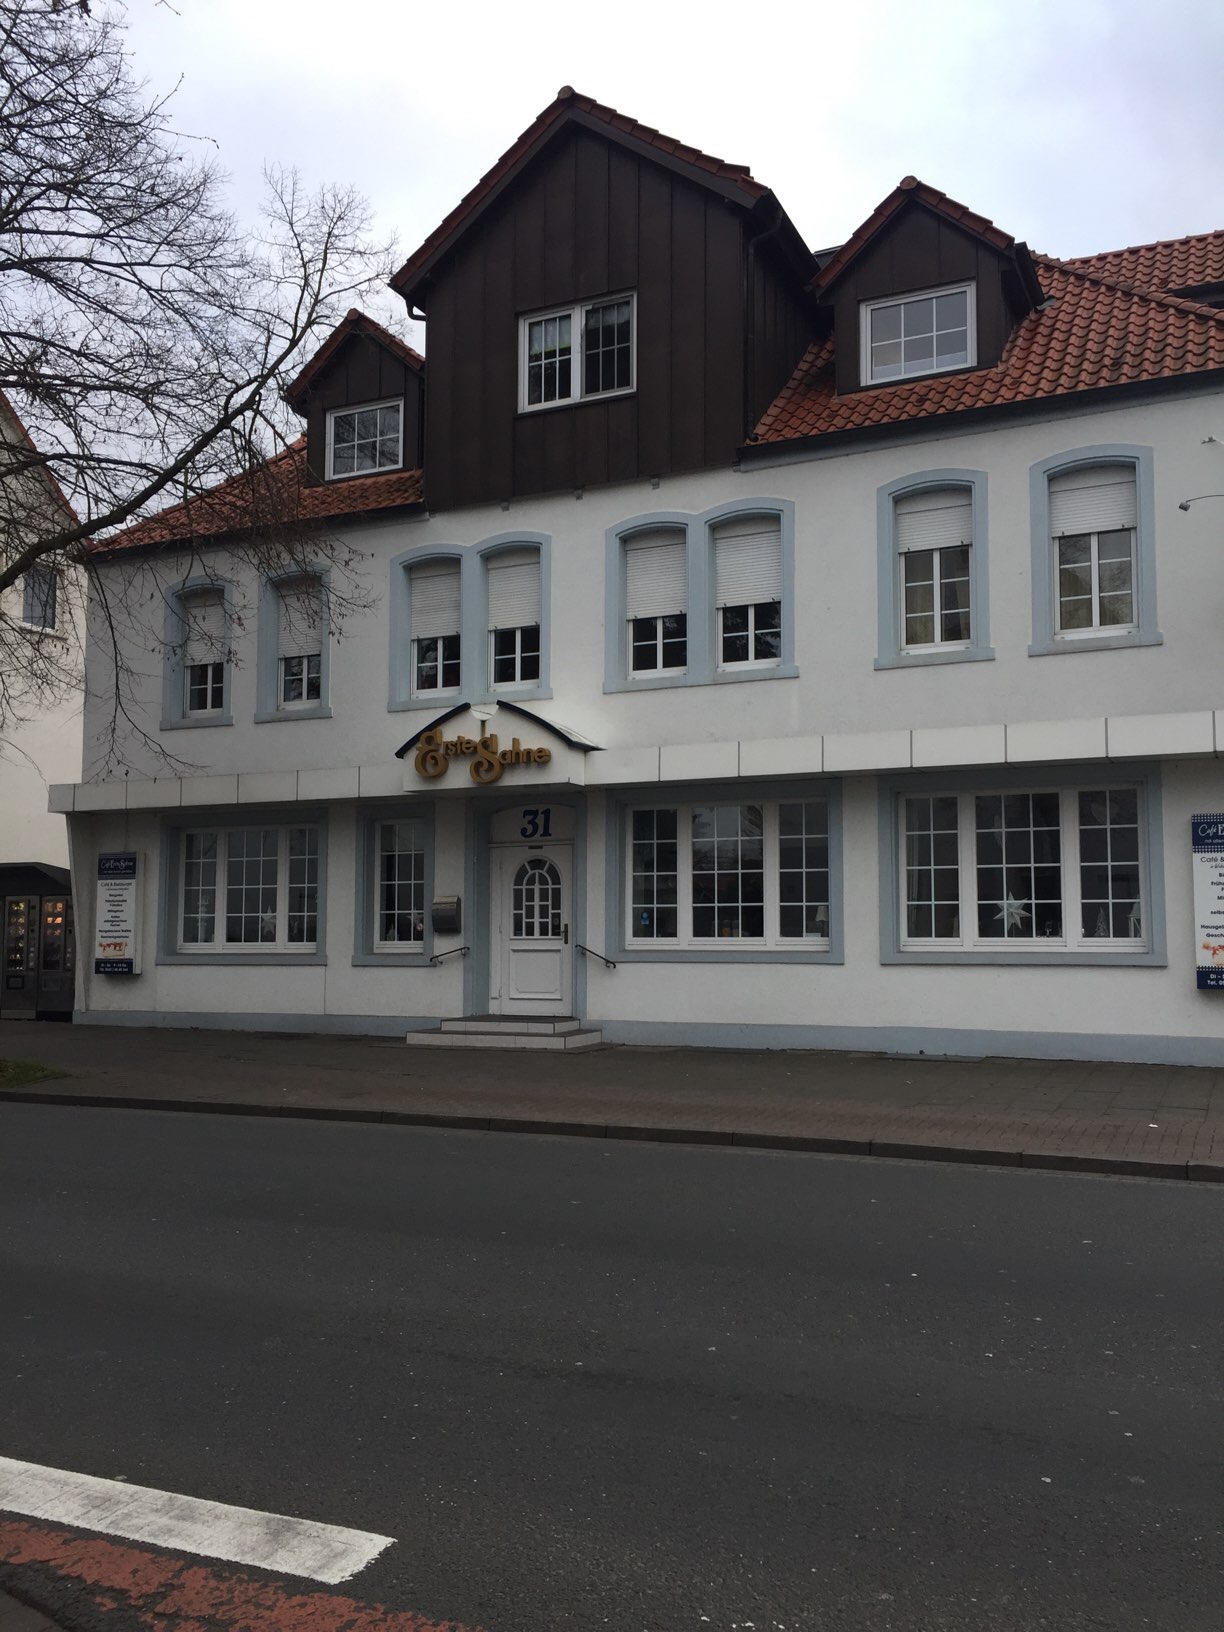 Bild 1 Erste Sahne Café in Osnabrück